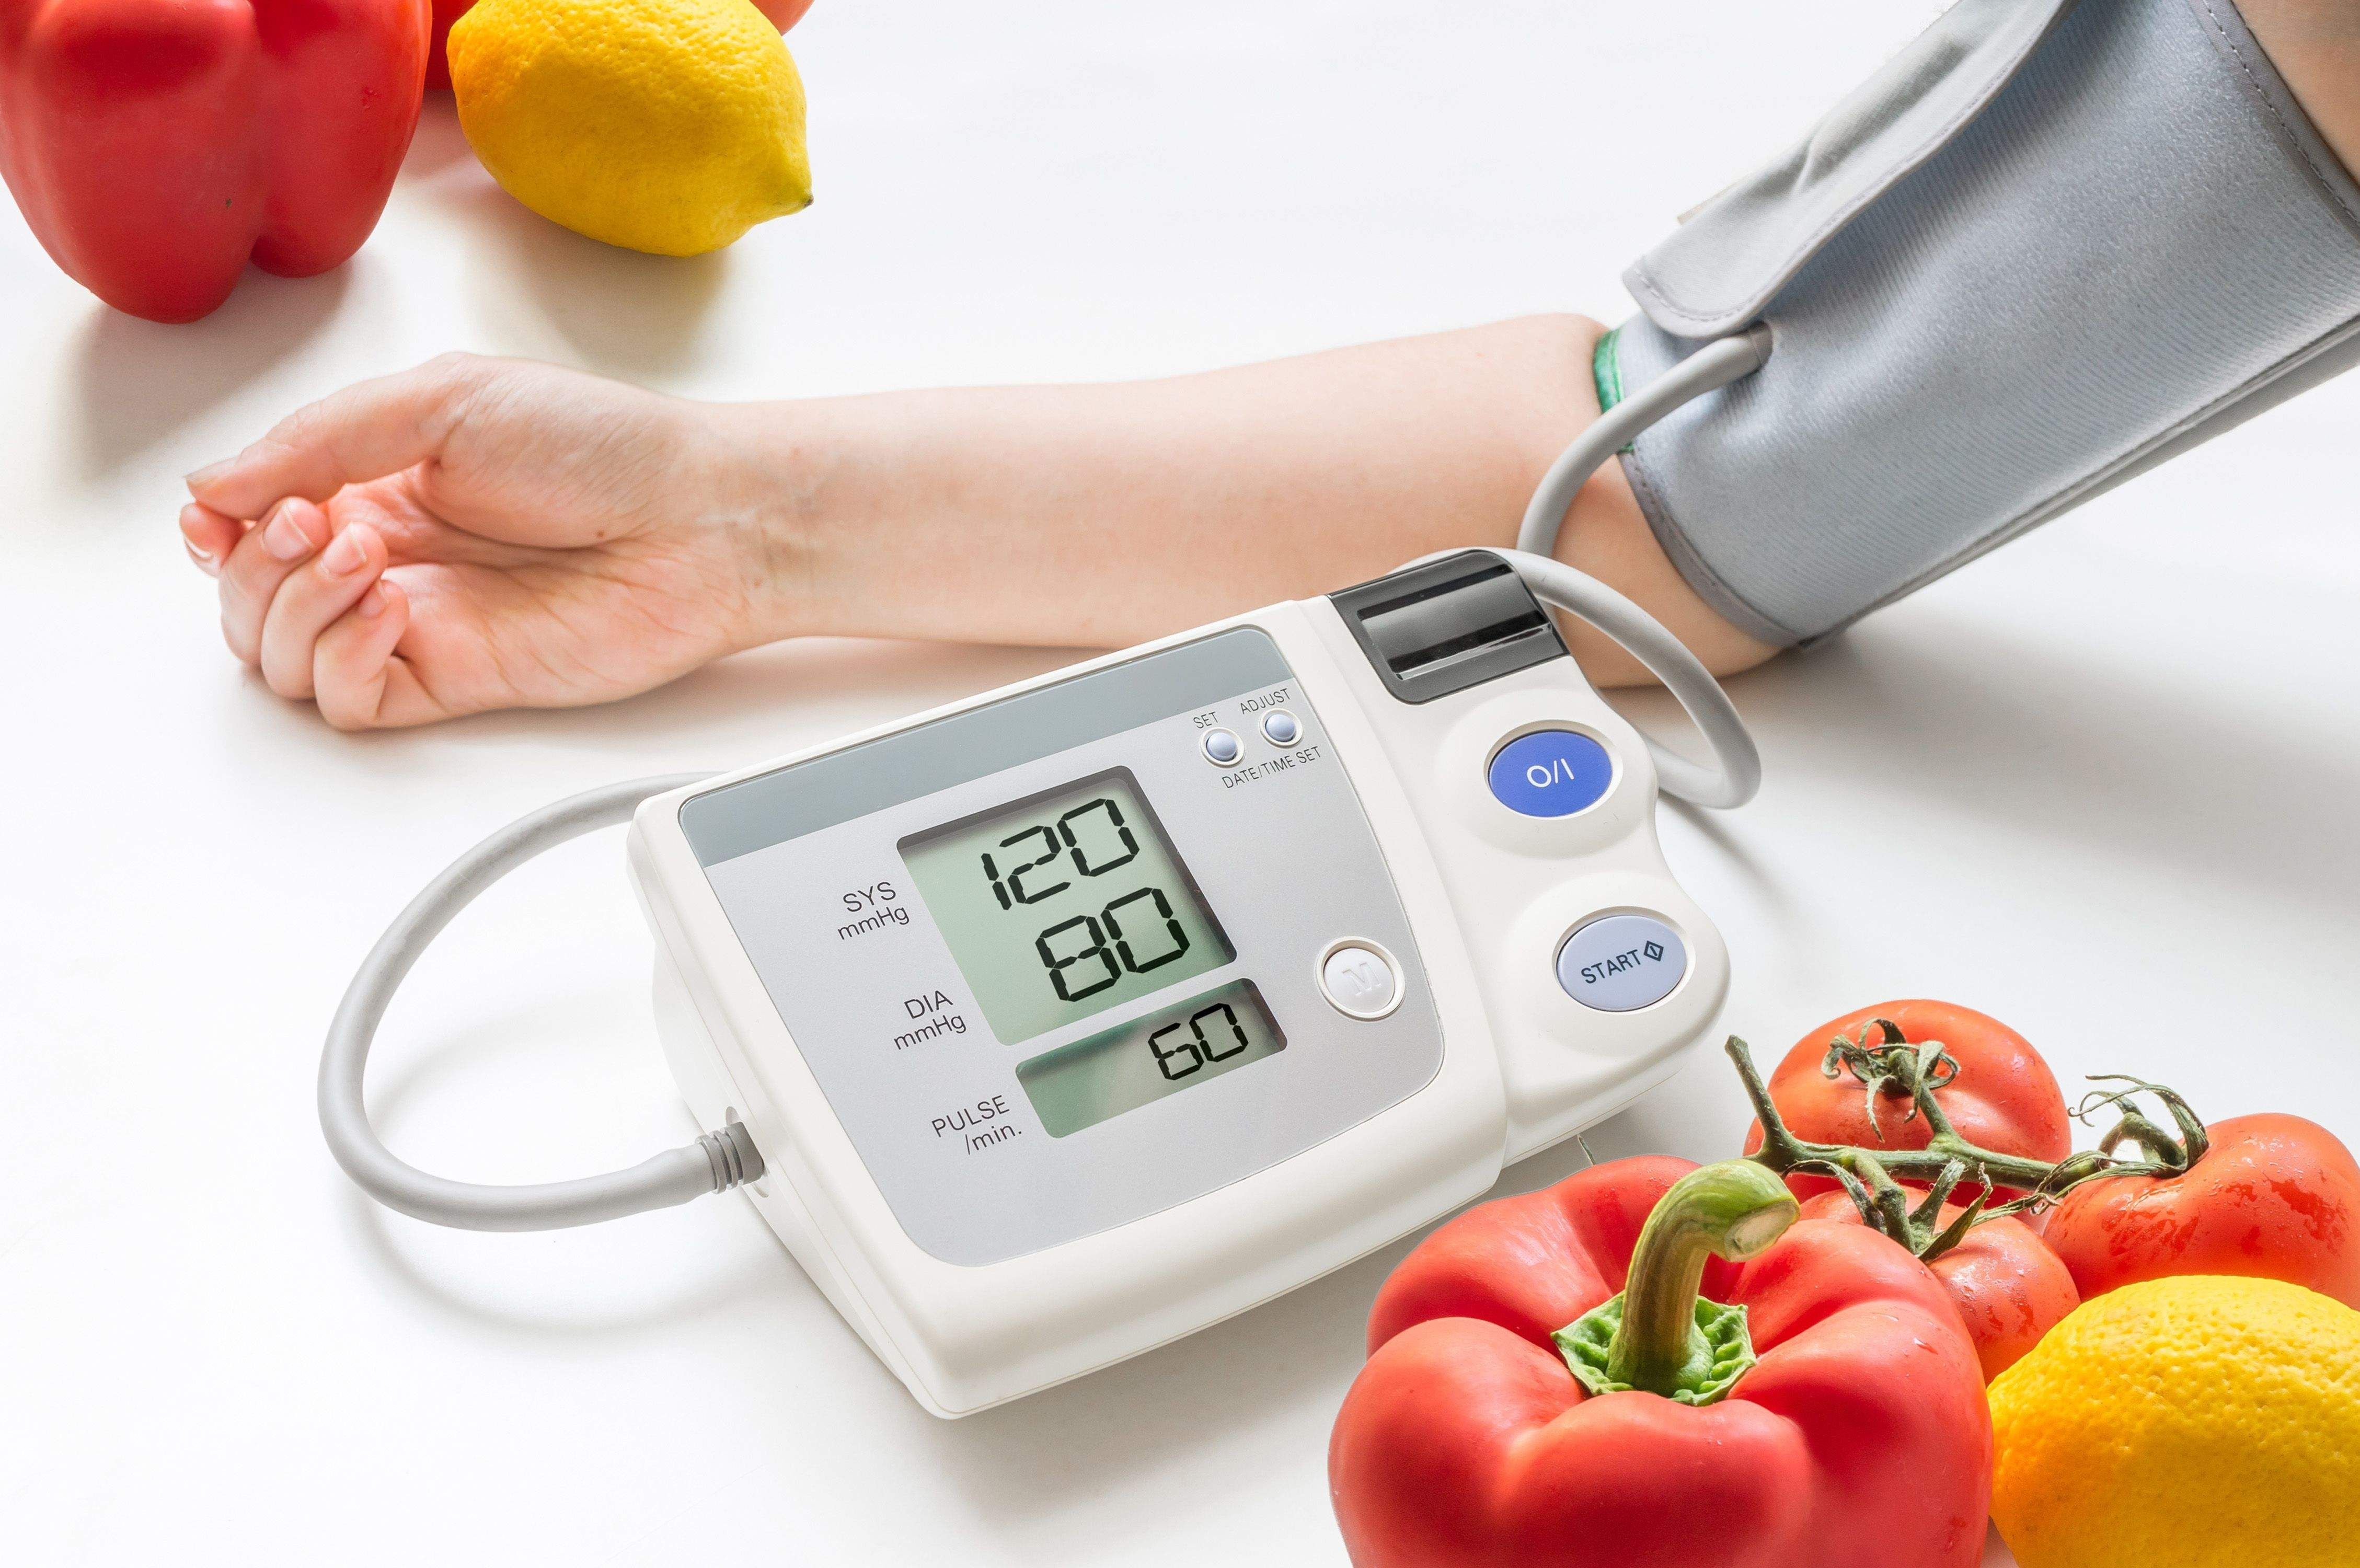 فشار خون طبیعی چقدر است؟